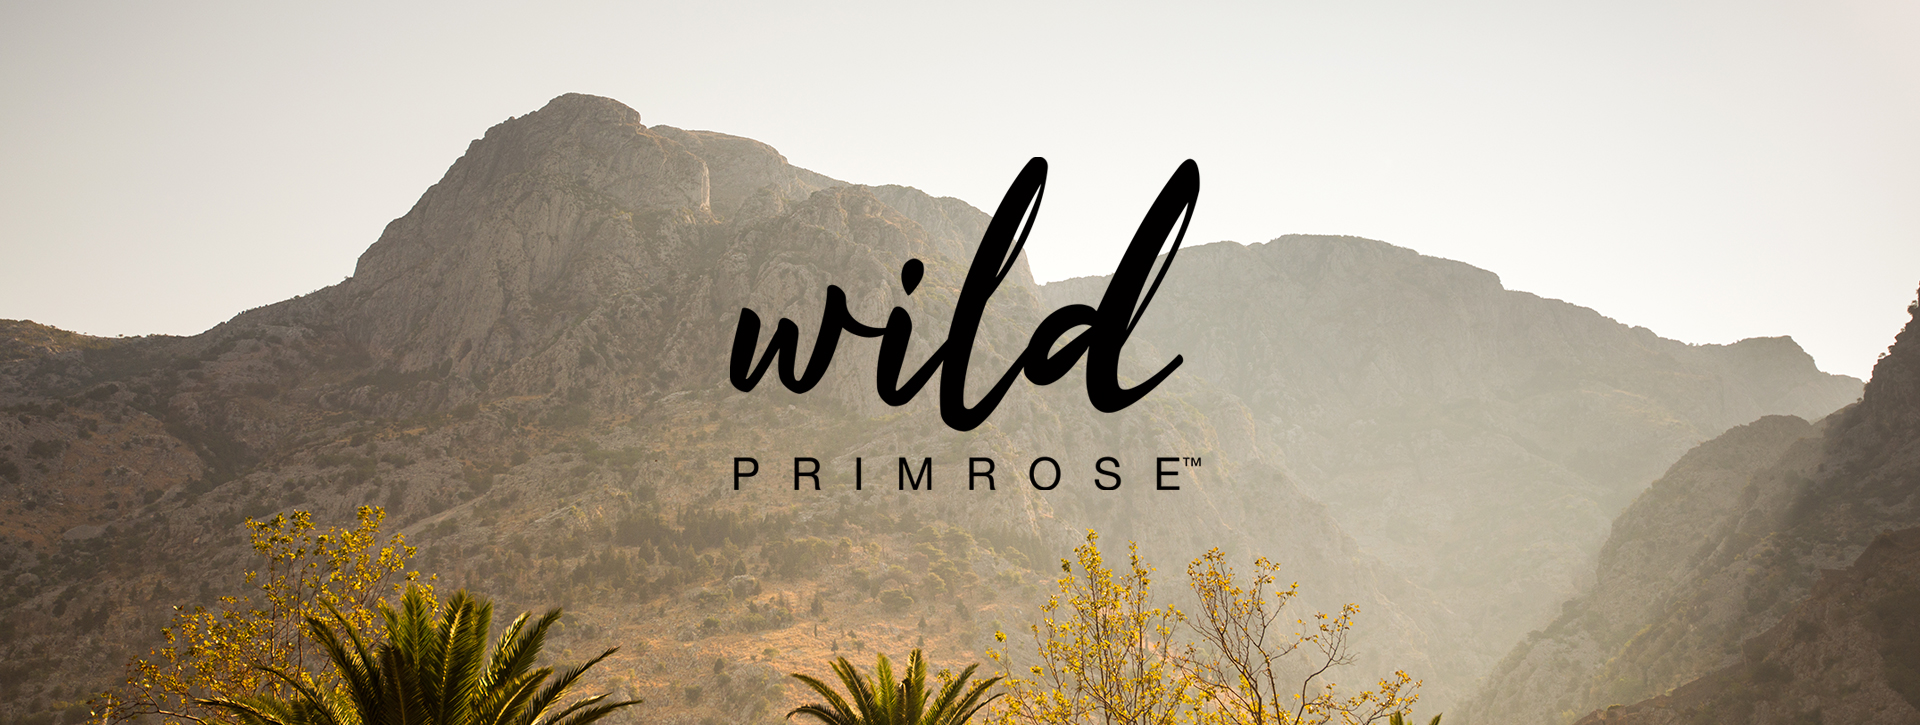 Wild-Primrose1